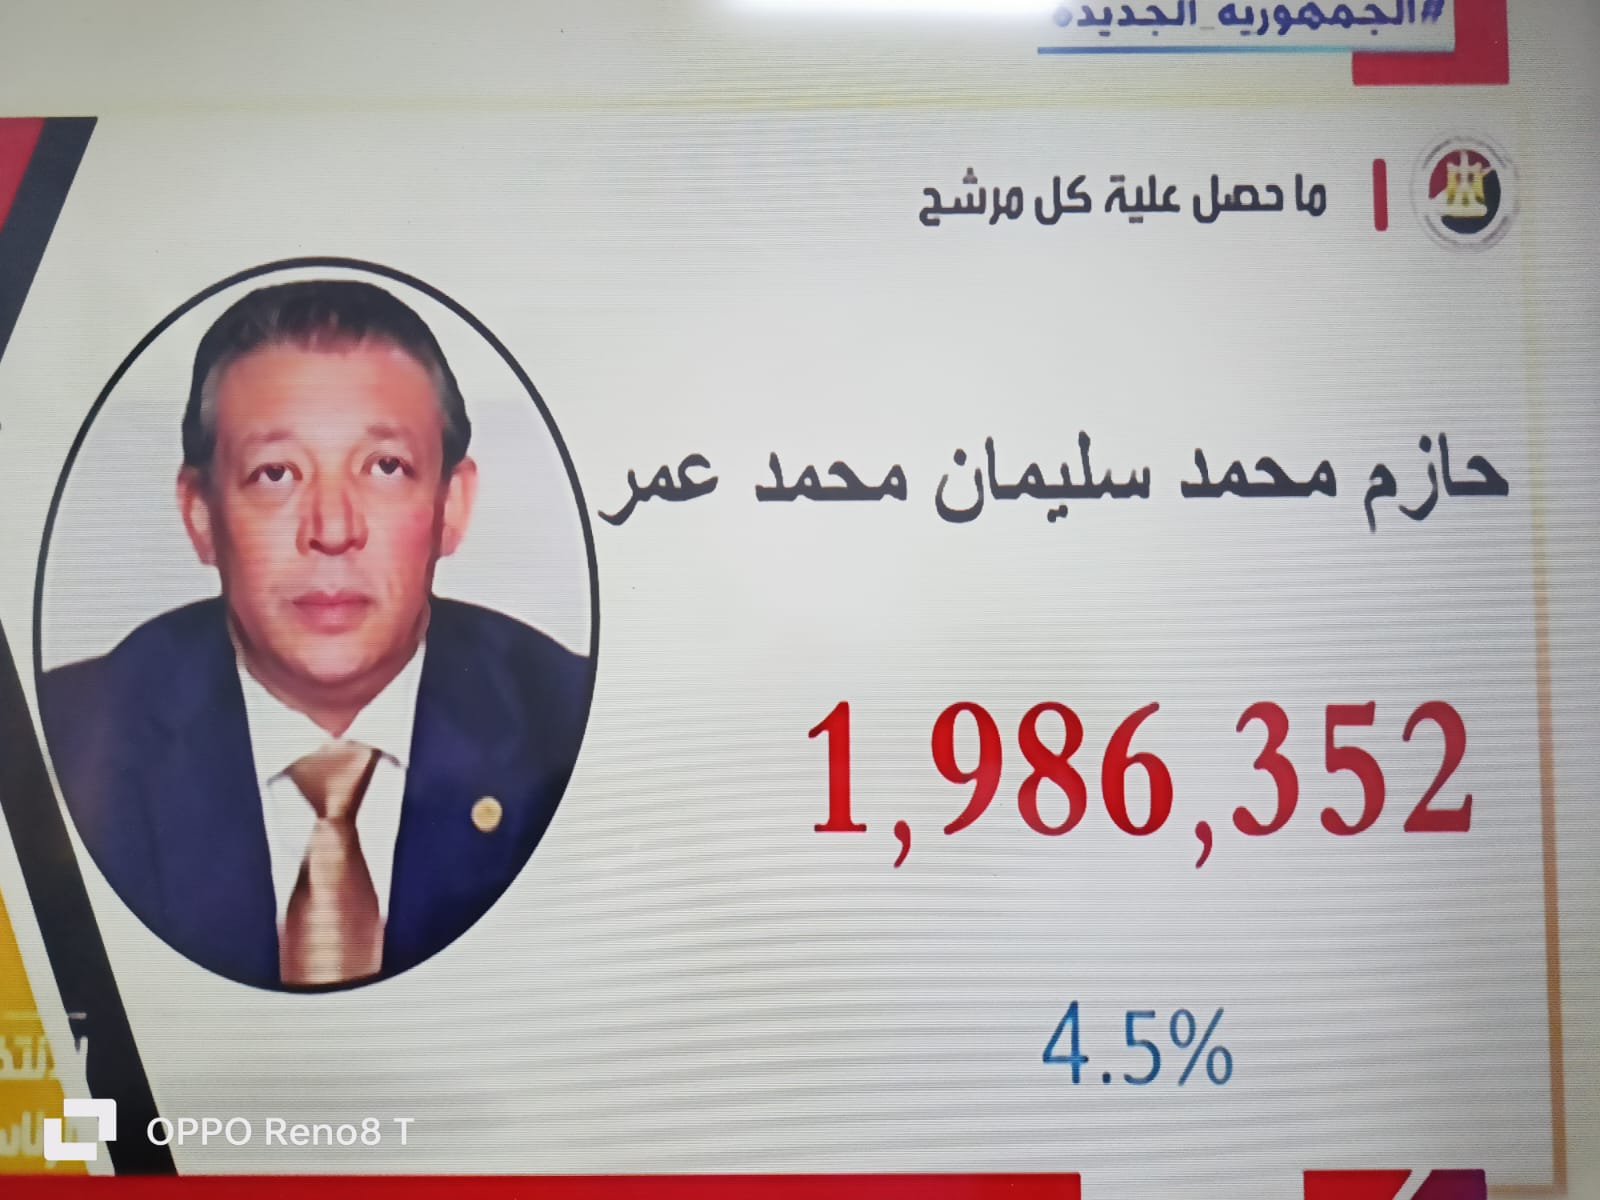 رسميا فوز الرئيس عبد الفتاح السيسي بولاية رئاسية ثالثة